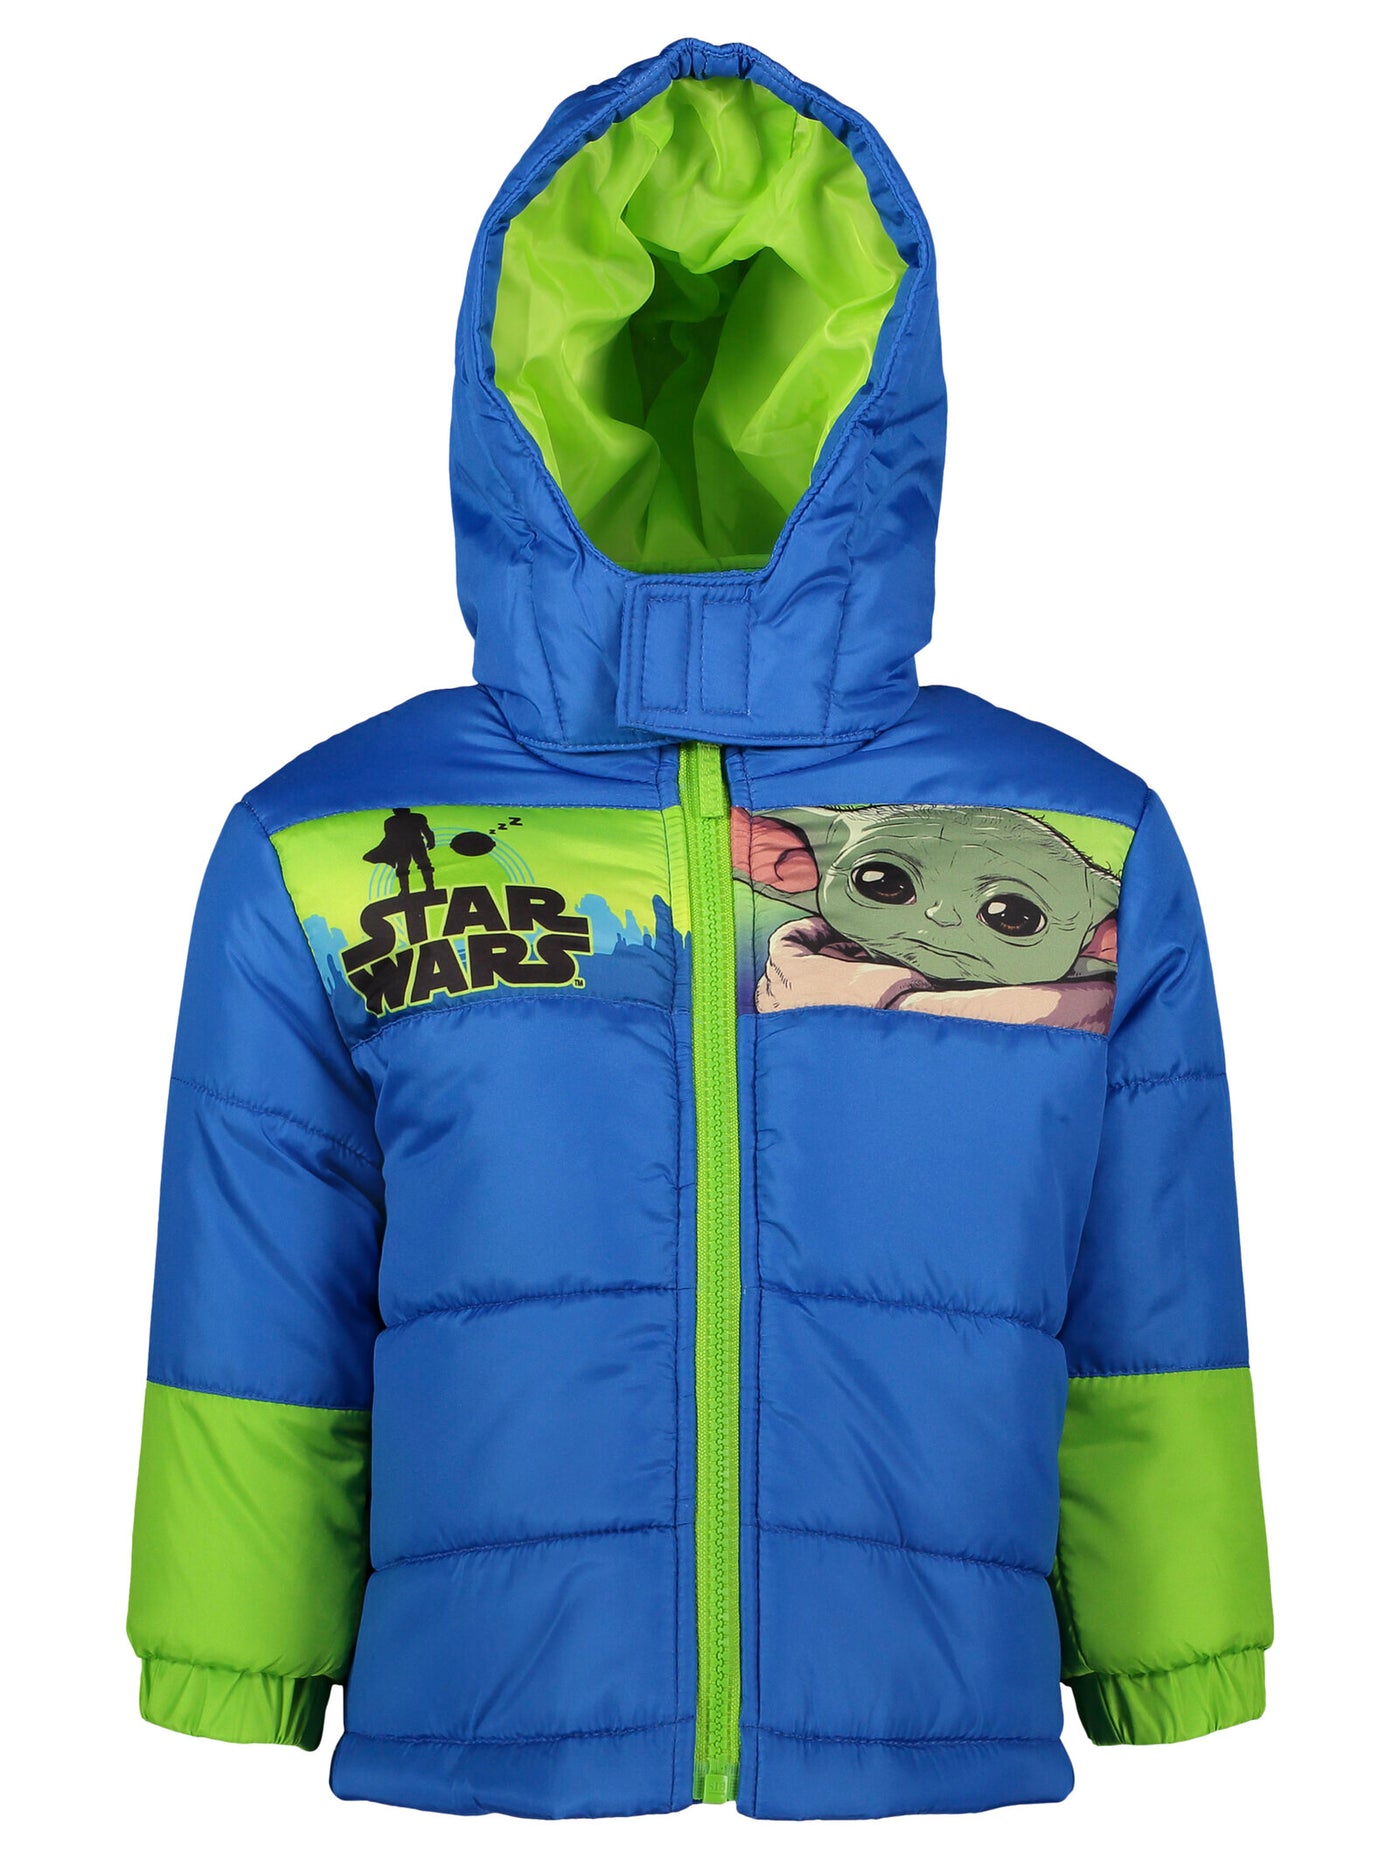 Star Wars Mesh Zip Up Winter Coat Puffer Jacket